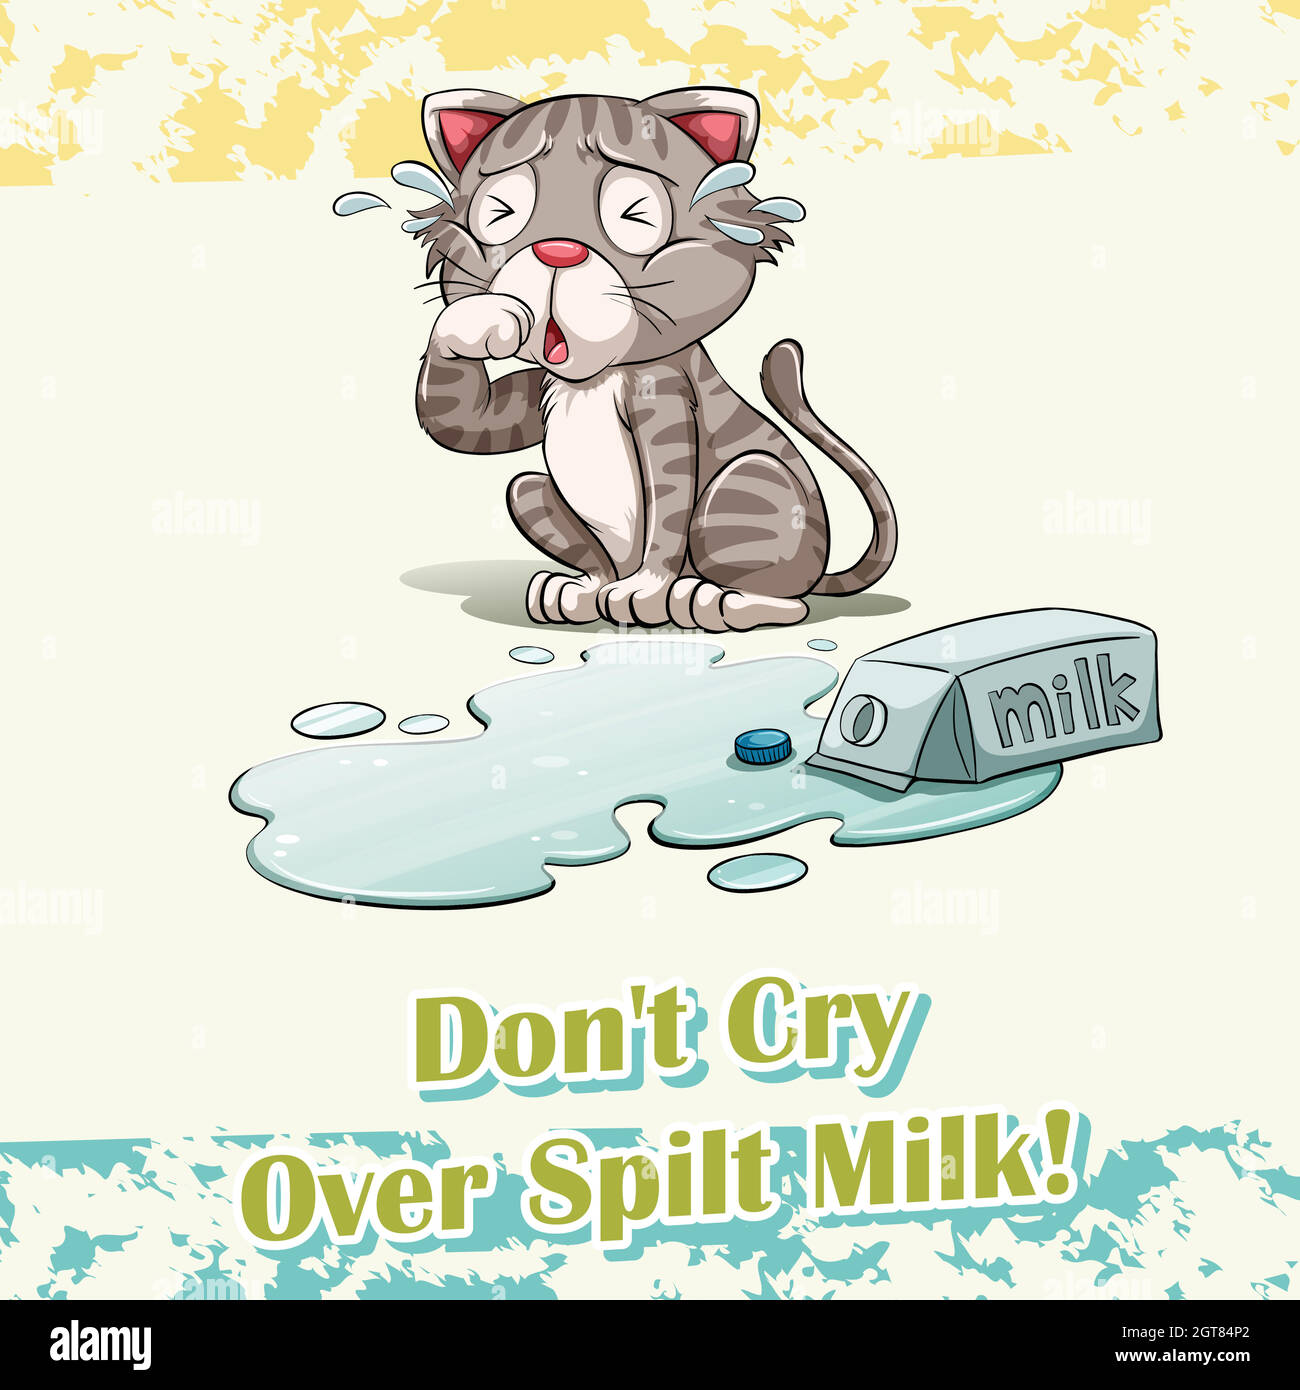 Crying over spilt milk идиома перевод. Crying over spilt Milk идиома. Over spilt Milk идиома. Spilled Milk. Don't Cry over spilt Milk.